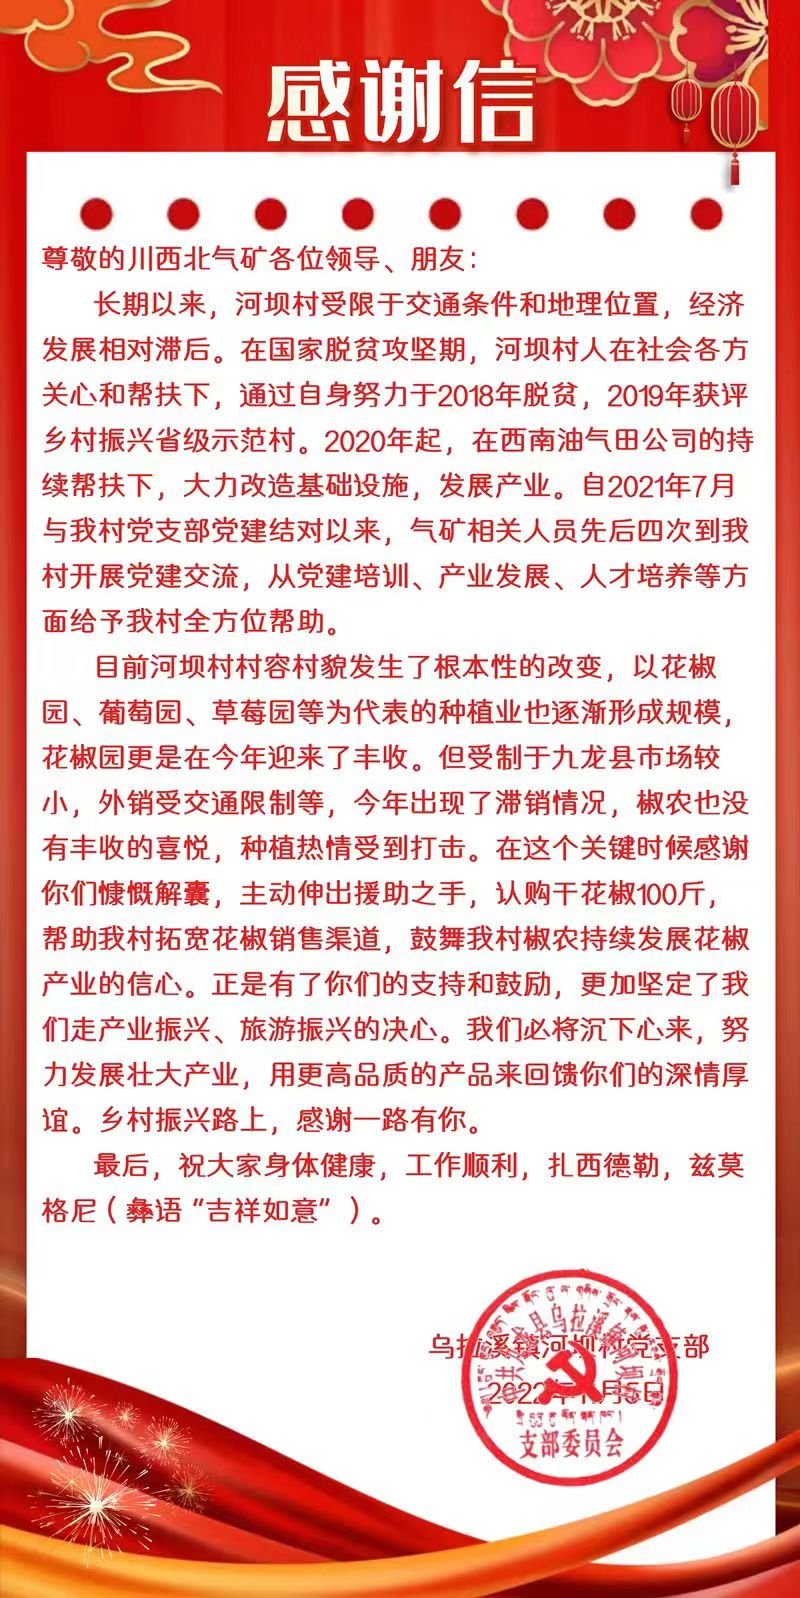 川西北气矿收到九龙县乌拉溪镇河坝村感谢信